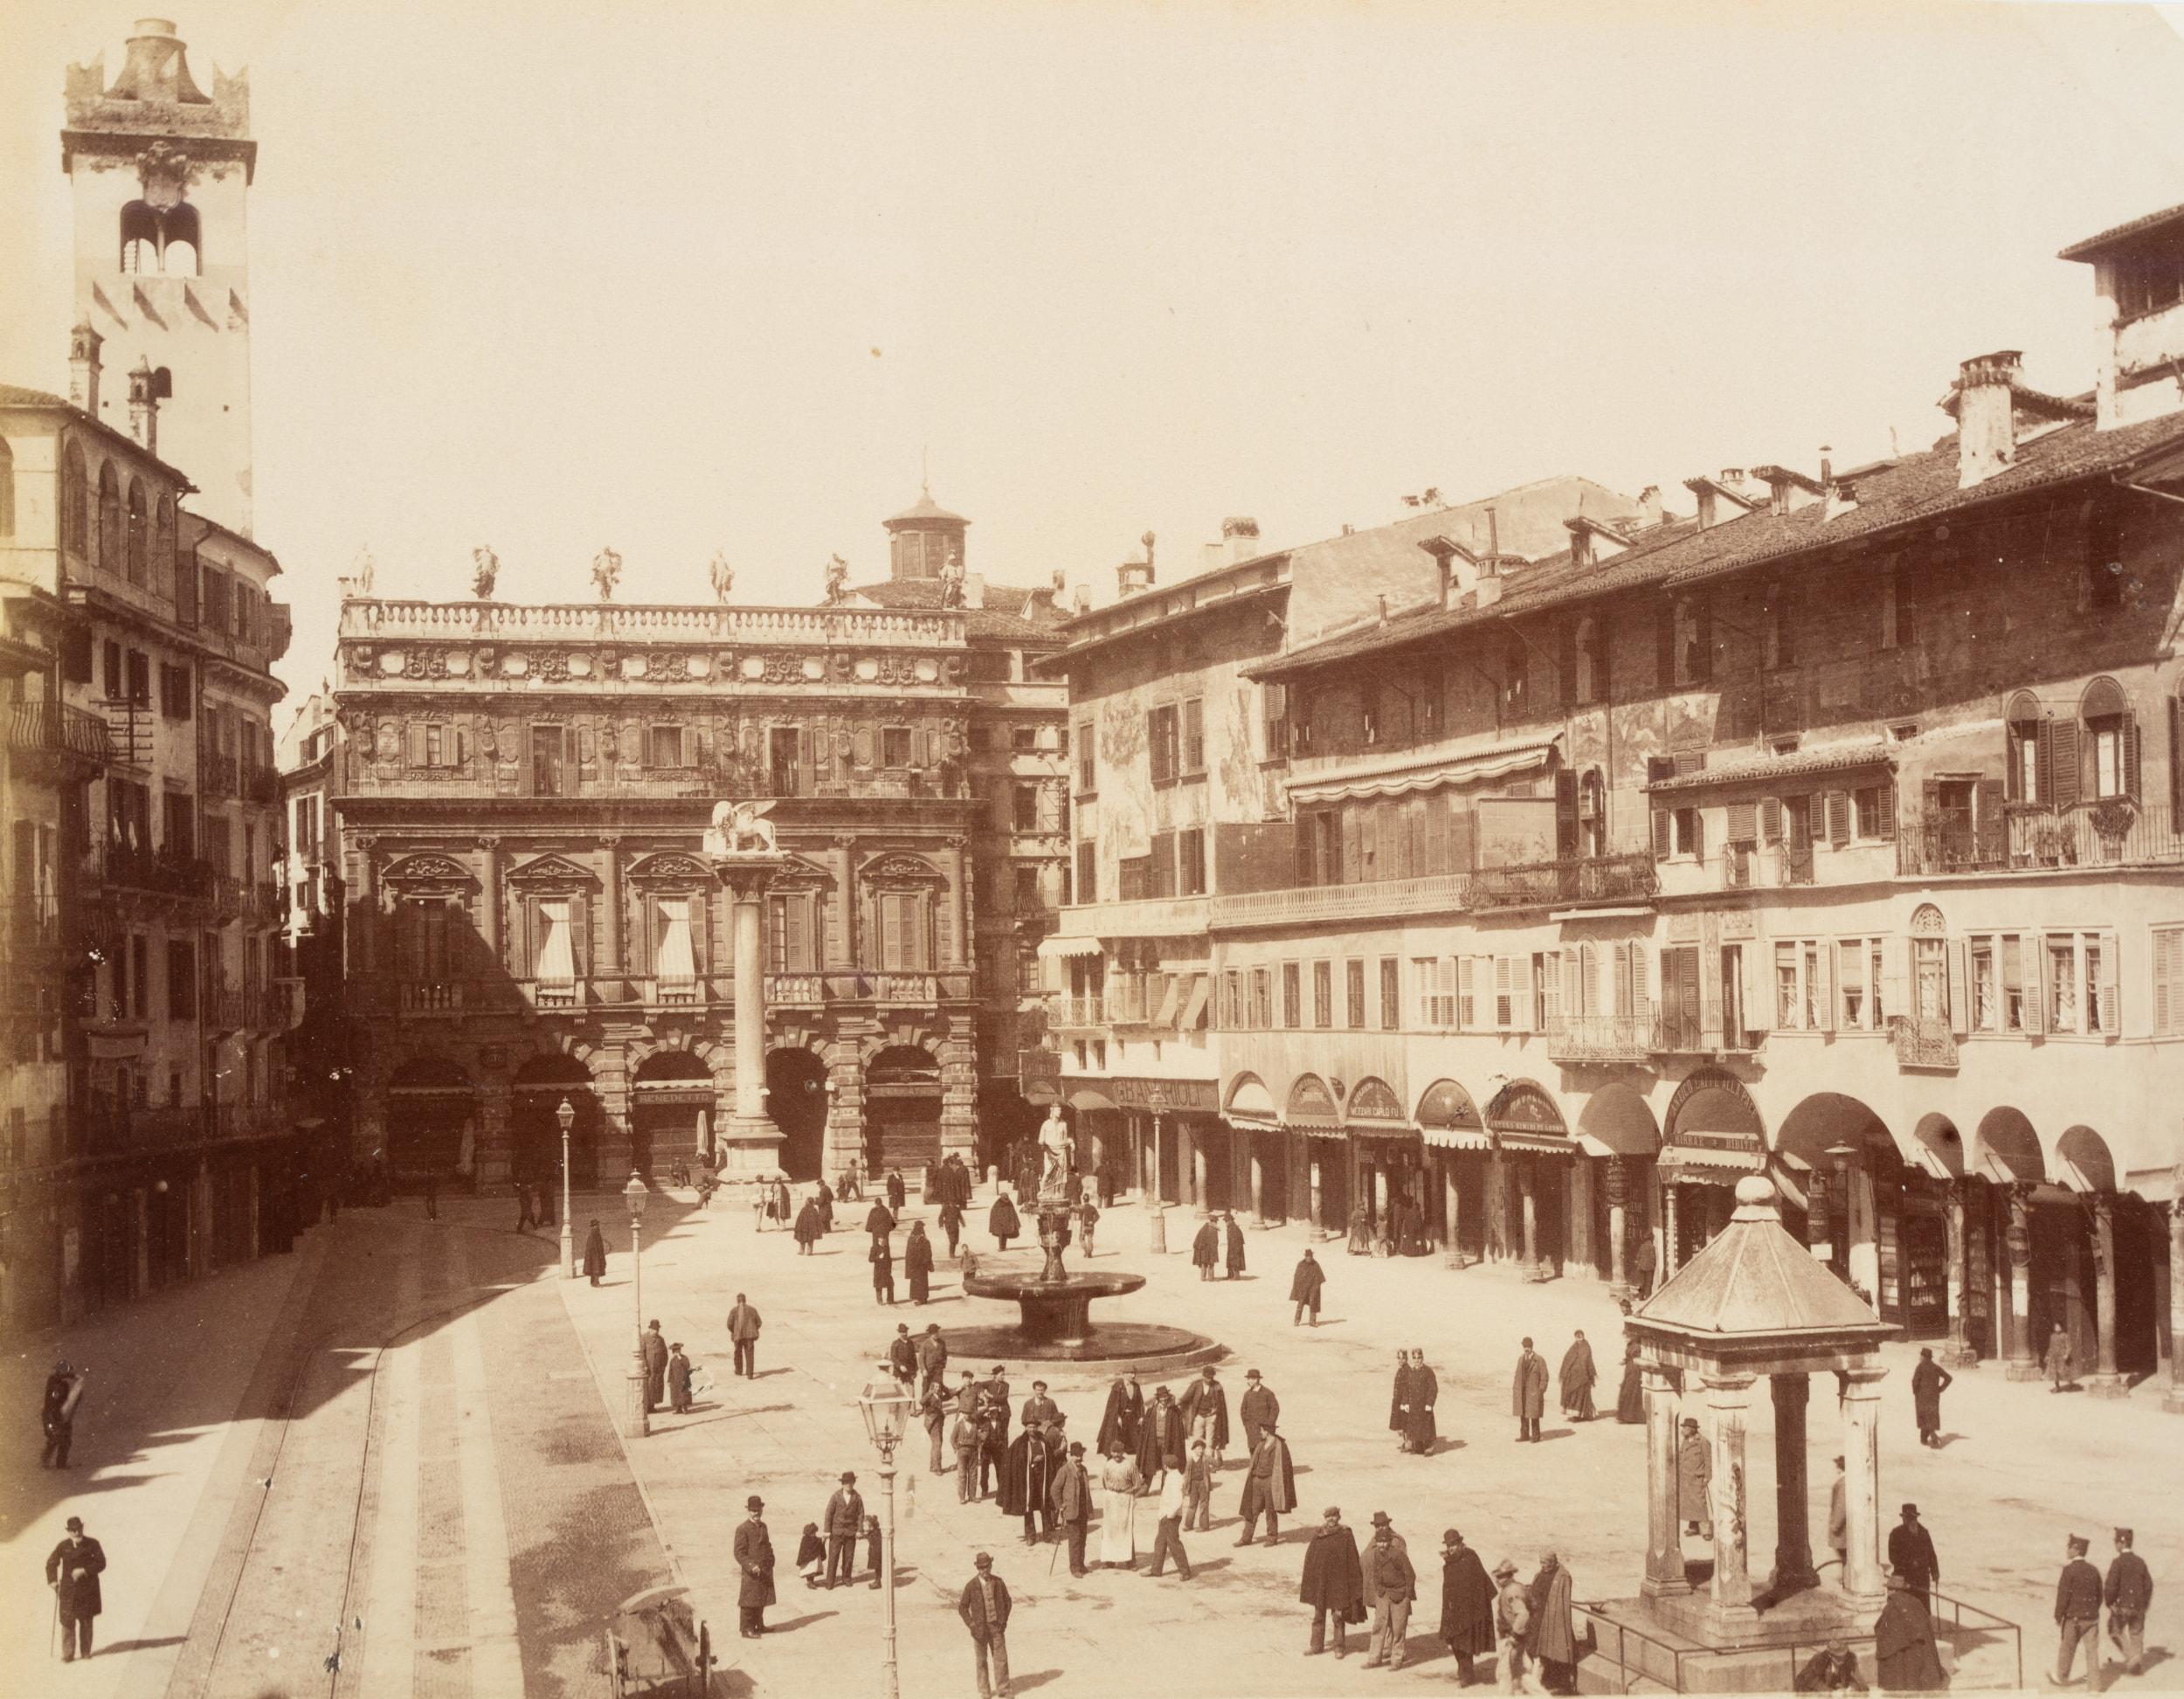 Unknown Landscape Photograph - View over the Piazza delle Erbe, Verona